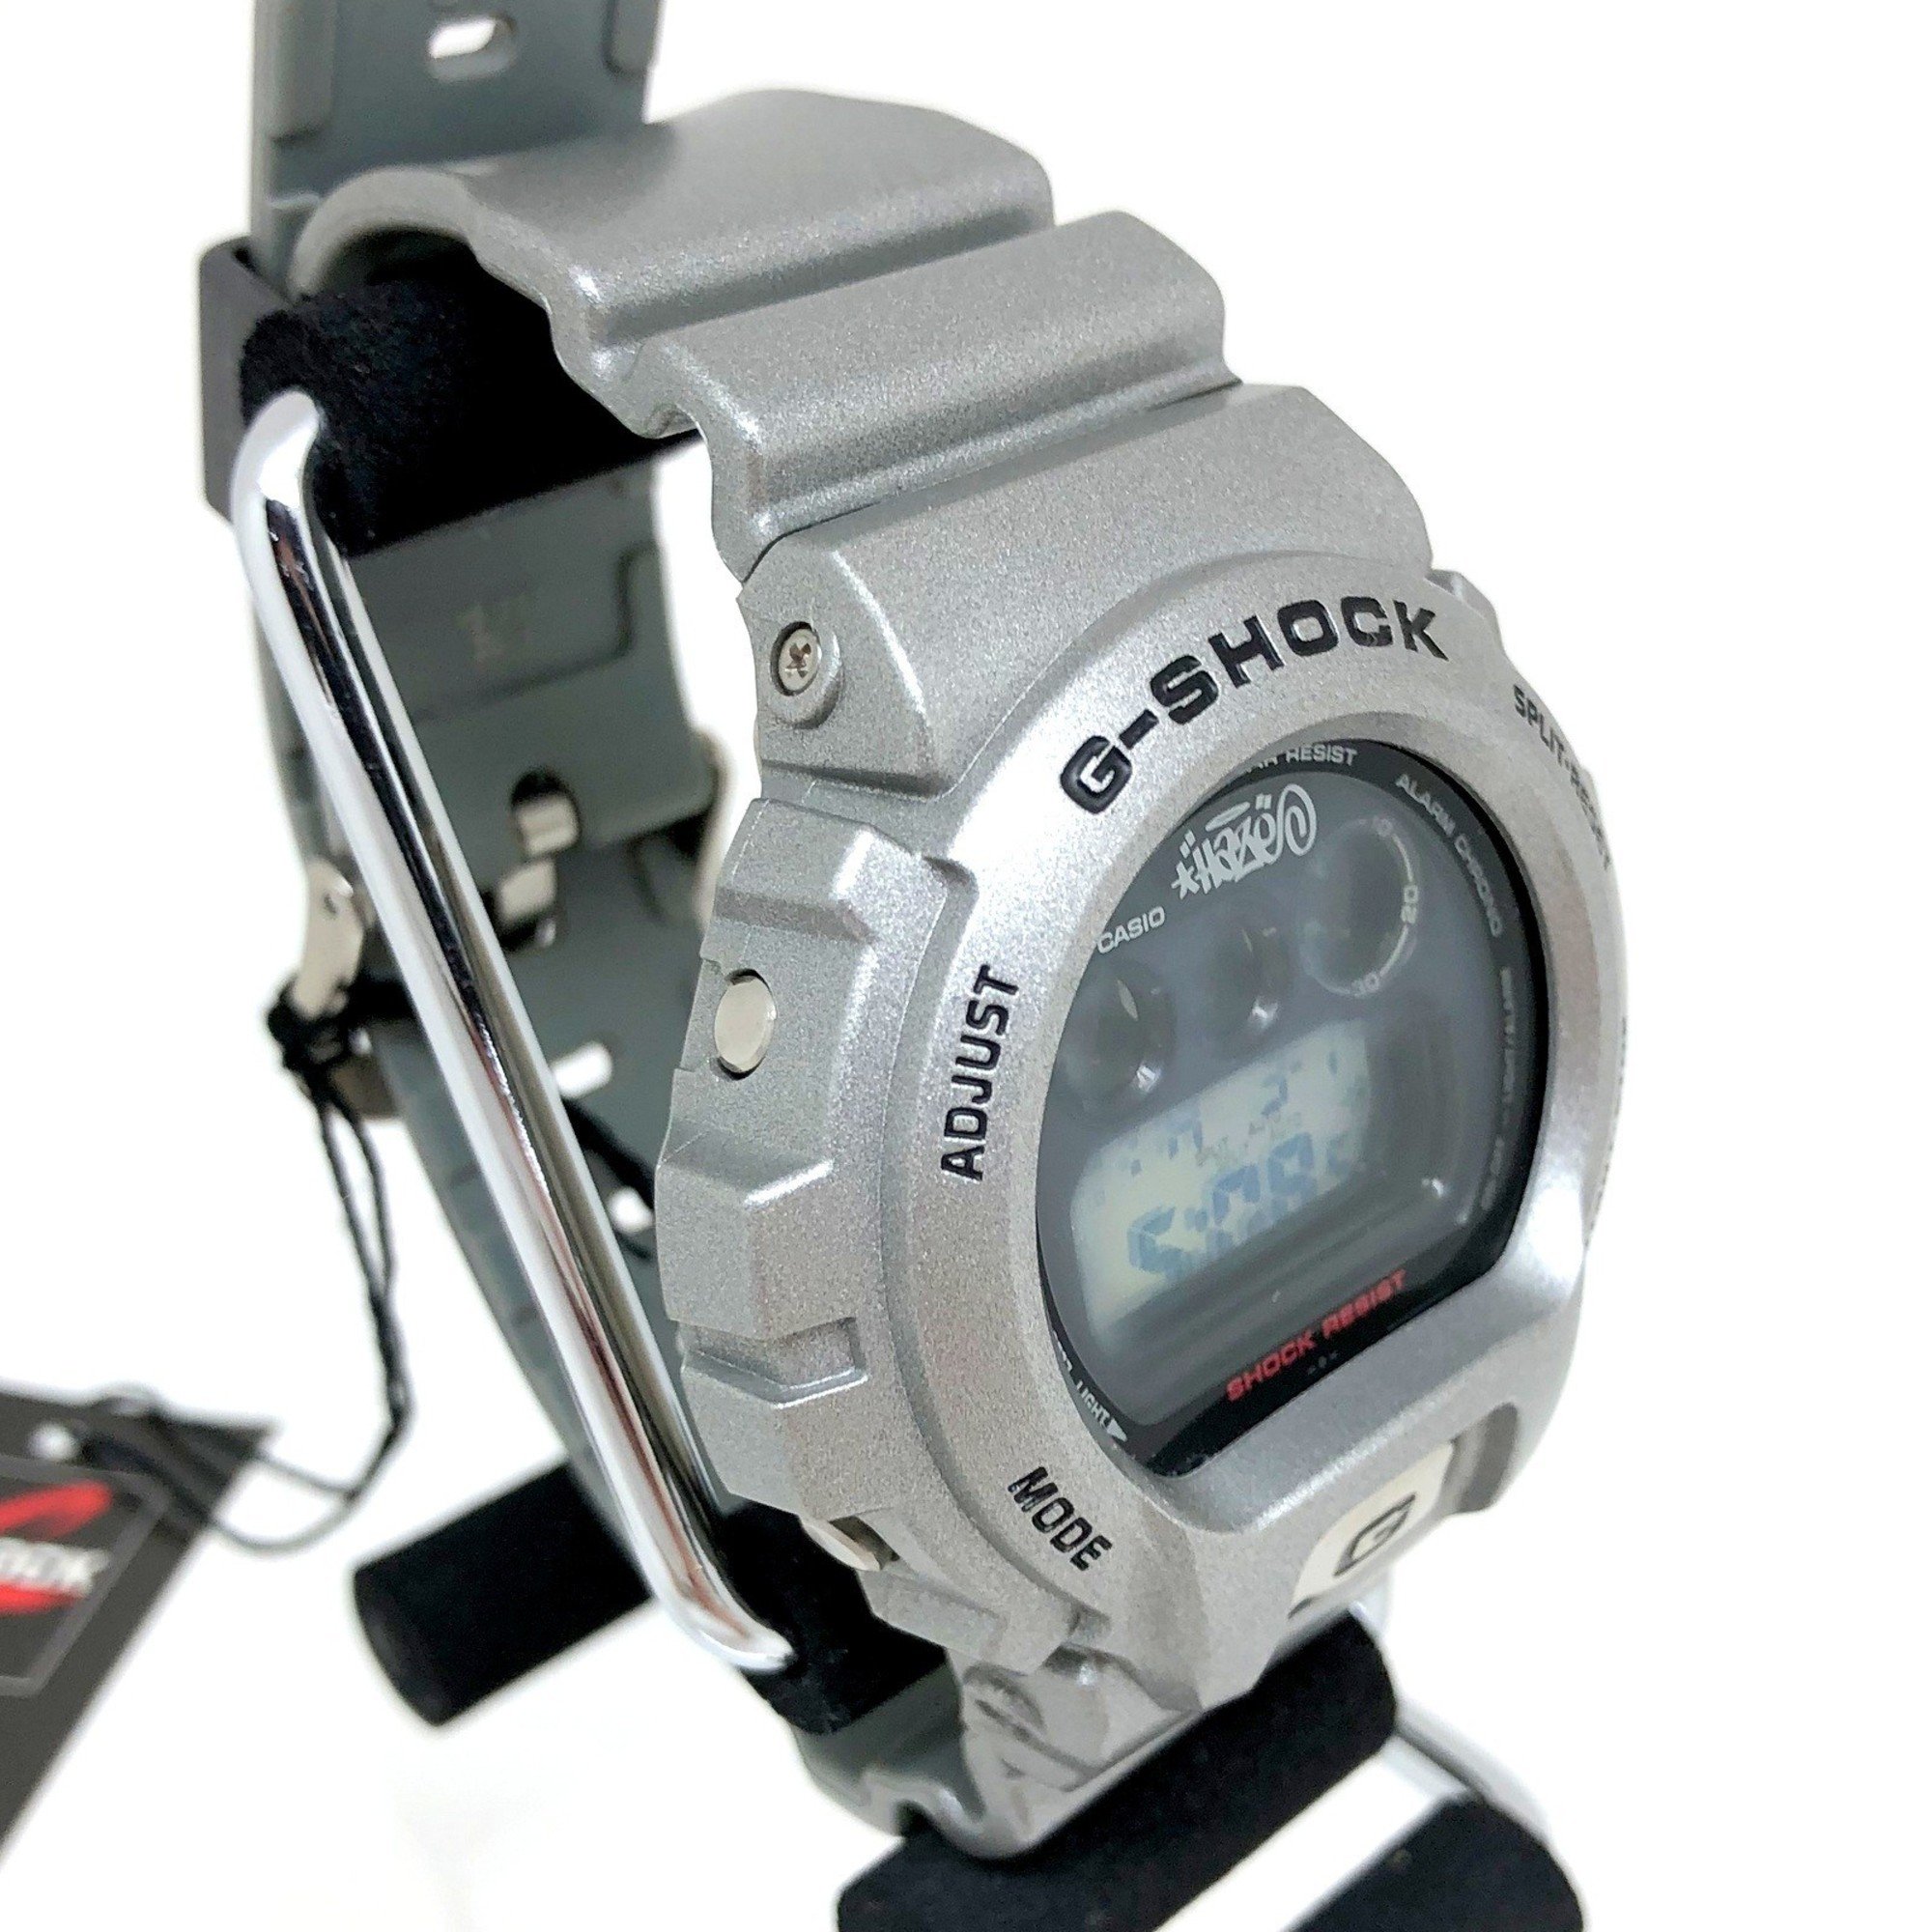 CASIO Casio G-SHOCK Watch DW-6900M-8T Collaboration Eric Haze Metallic Silver Men's Street Third Eye IT6CEC8TB0V0